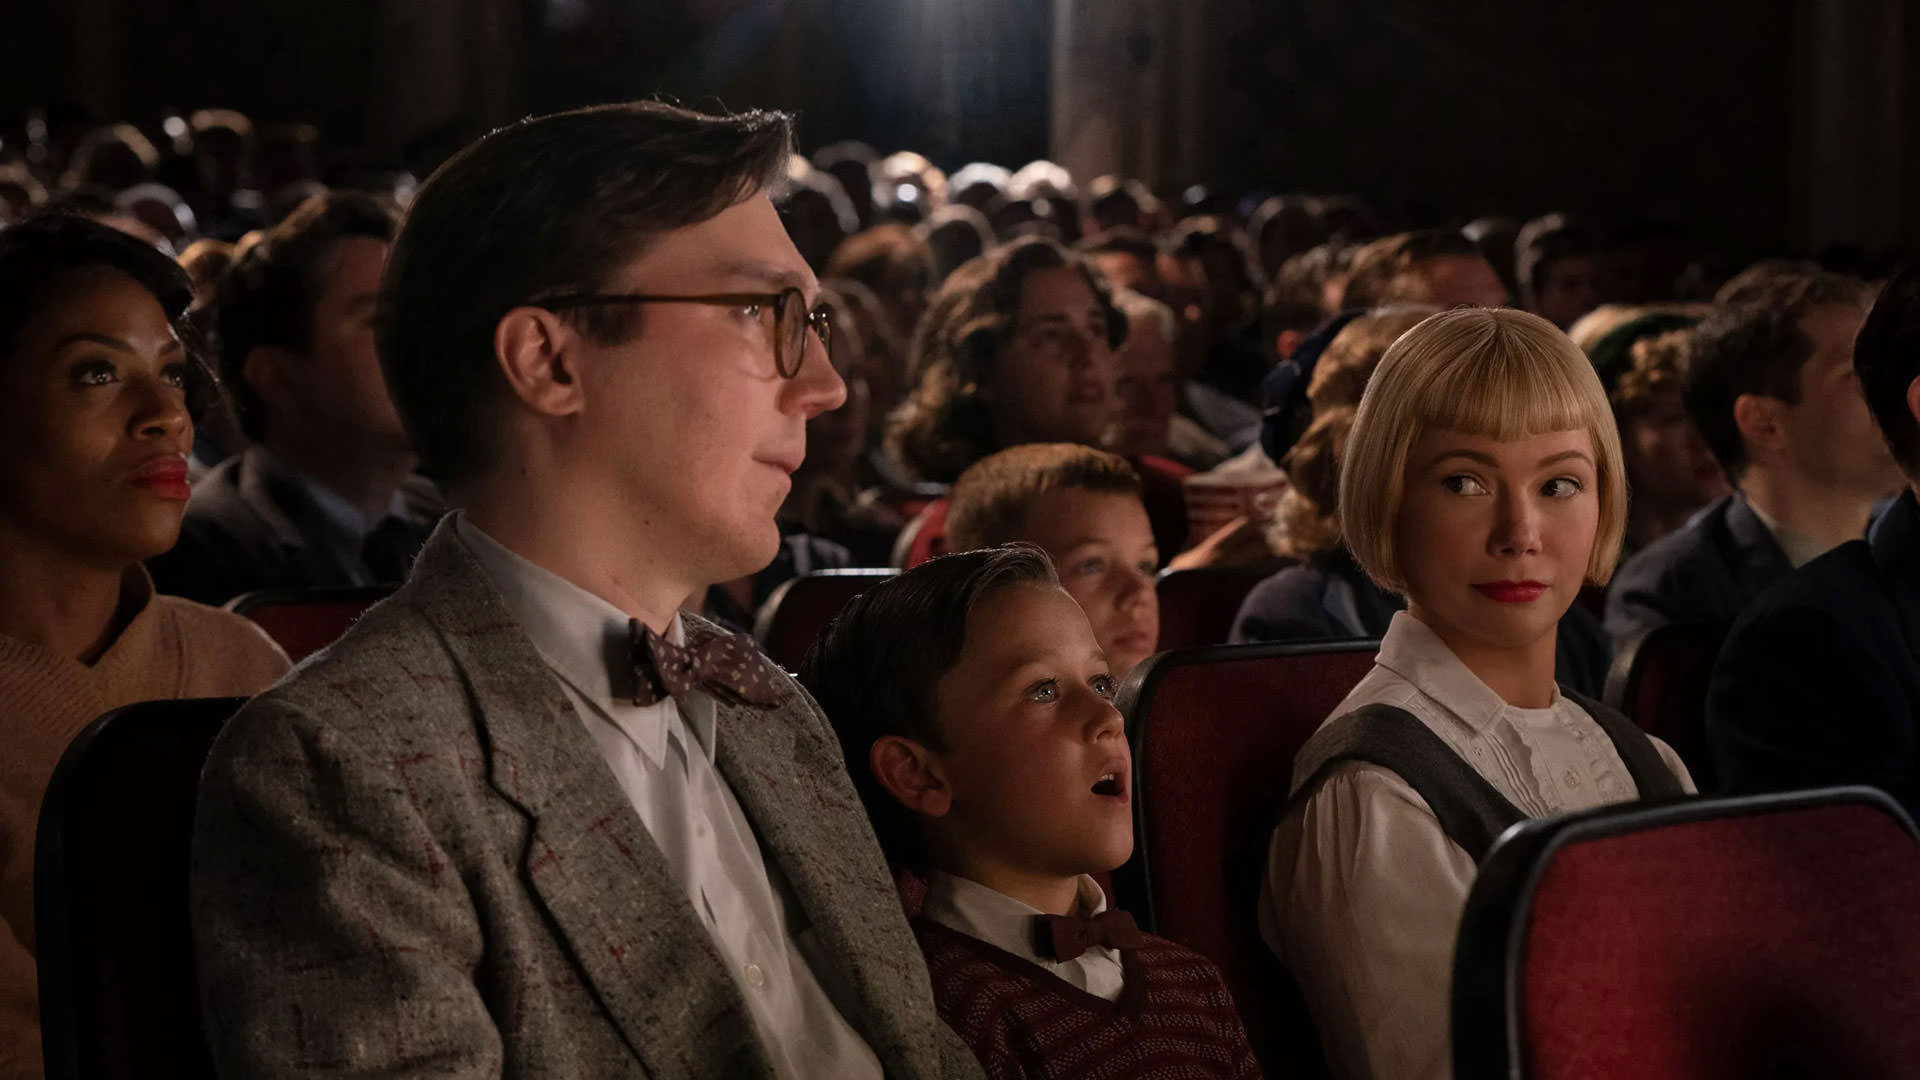 پل دینو، متئو زوریان، و میشل ویلیامز، نشسته روی صندلی‌های یک سالن سینما و در حال تماشای یک فیلم در نمایی از فیلم خانواده‌ی فیبلمن به کارگردانی استیون اسپیلبرگ